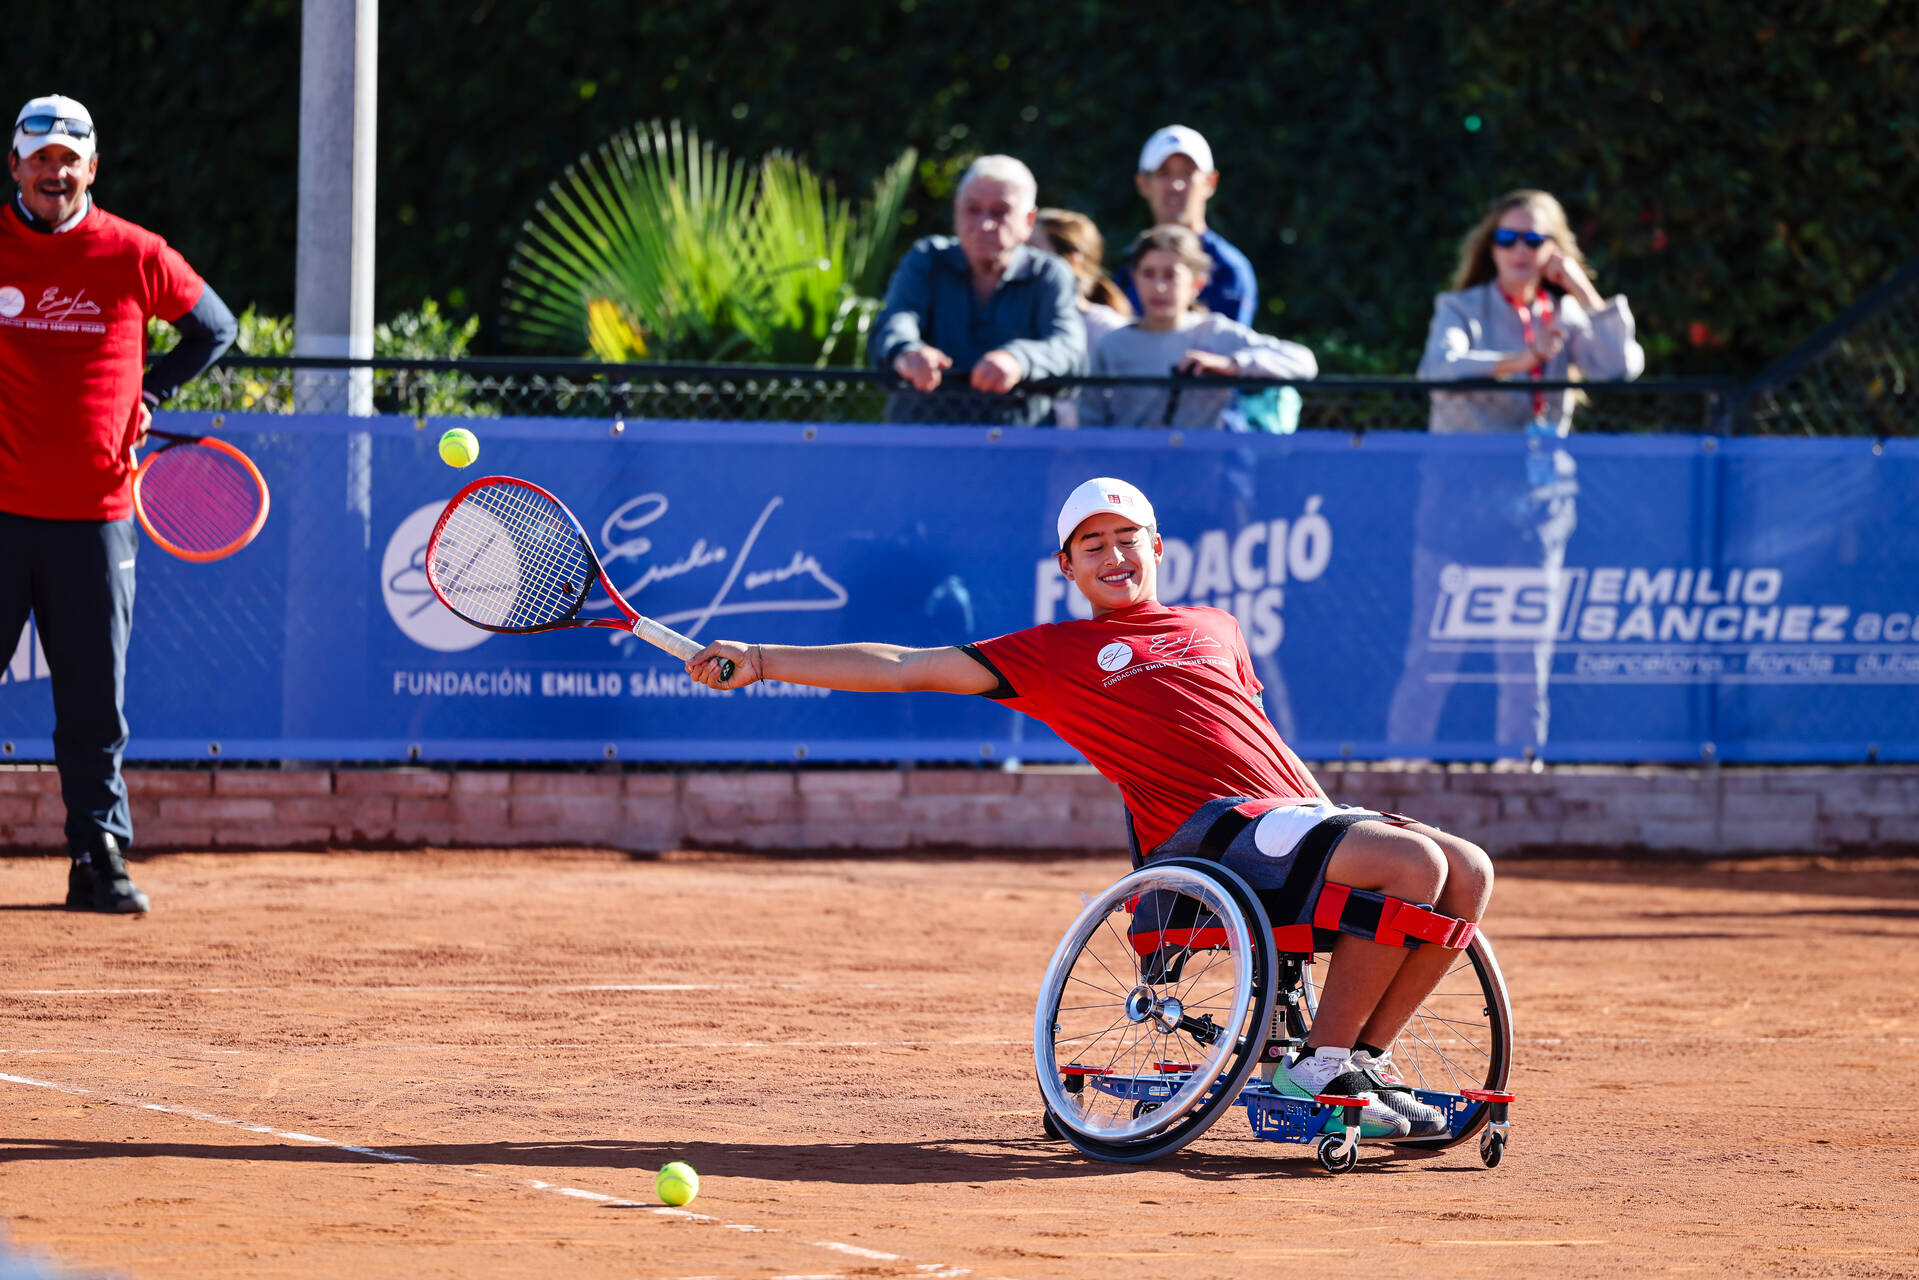 Image for Clinic “descubre la magia del tenis en silla de ruedas” en Nec Master Mundial de Tenis en silla